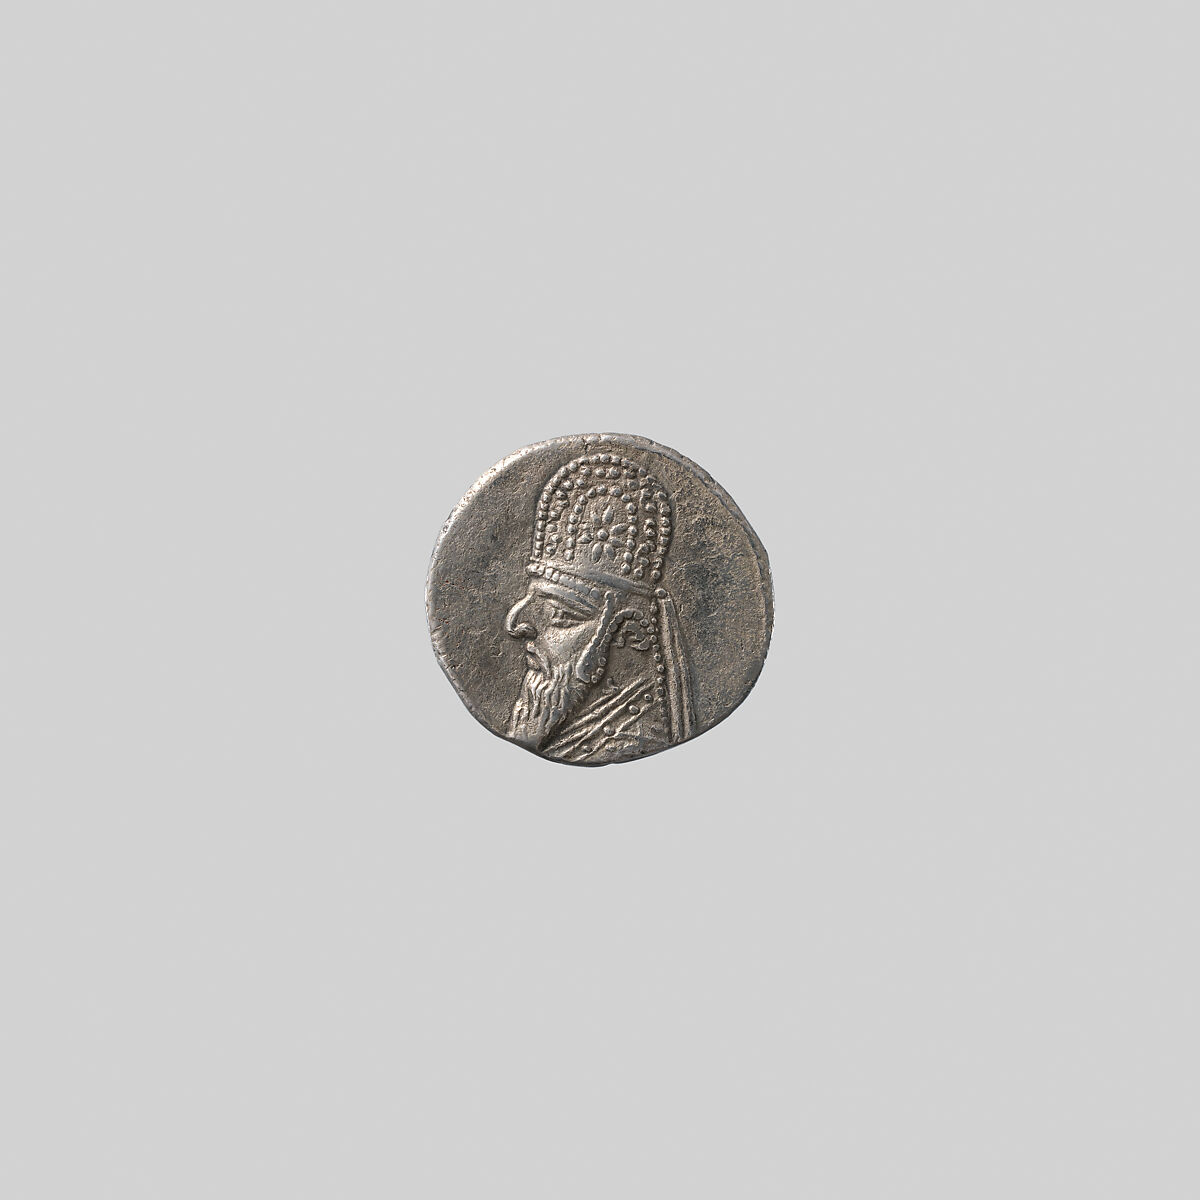 Silver drachm, Silver, Parthian